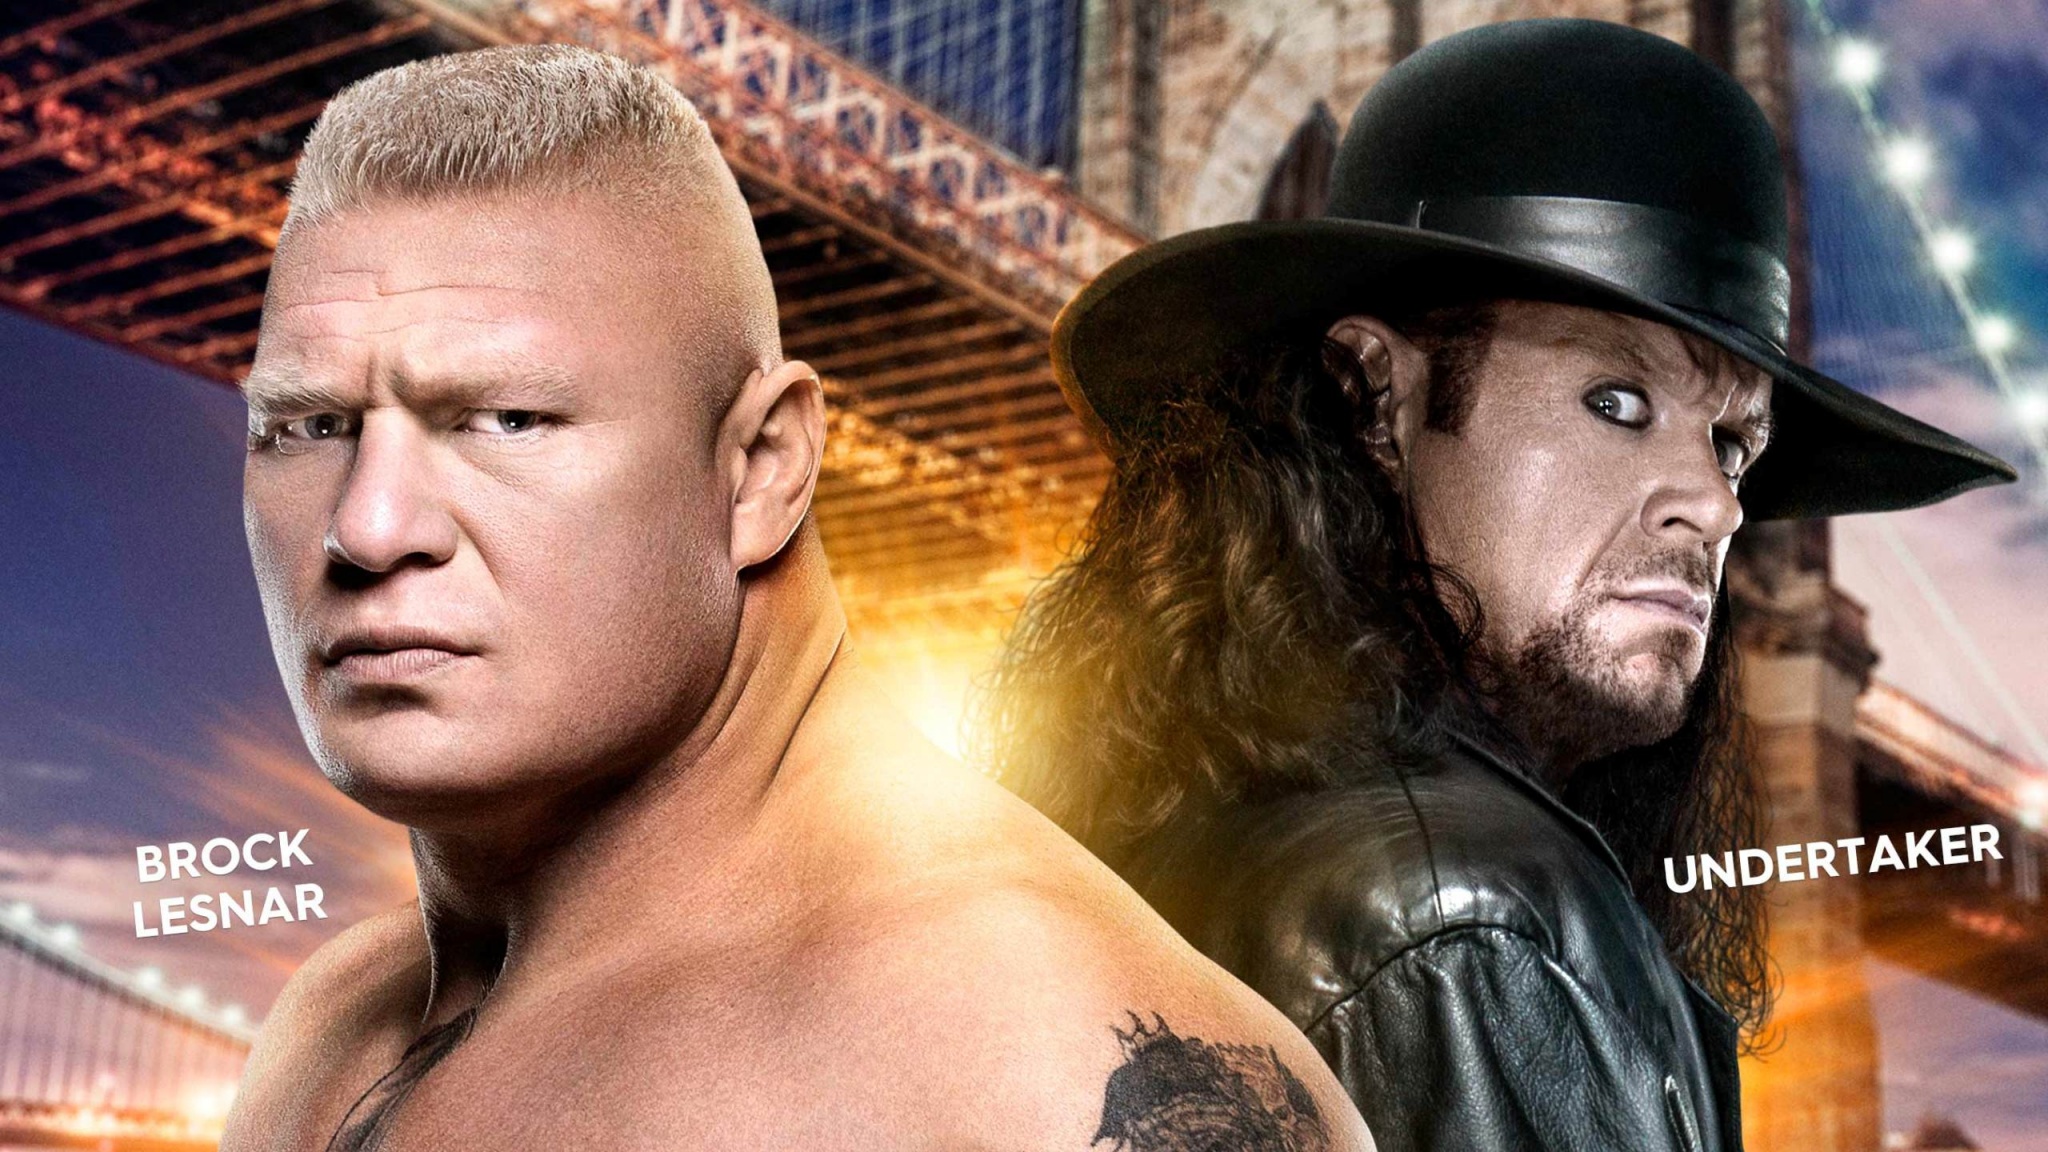 Undertaker And Brock Lesnar WWE